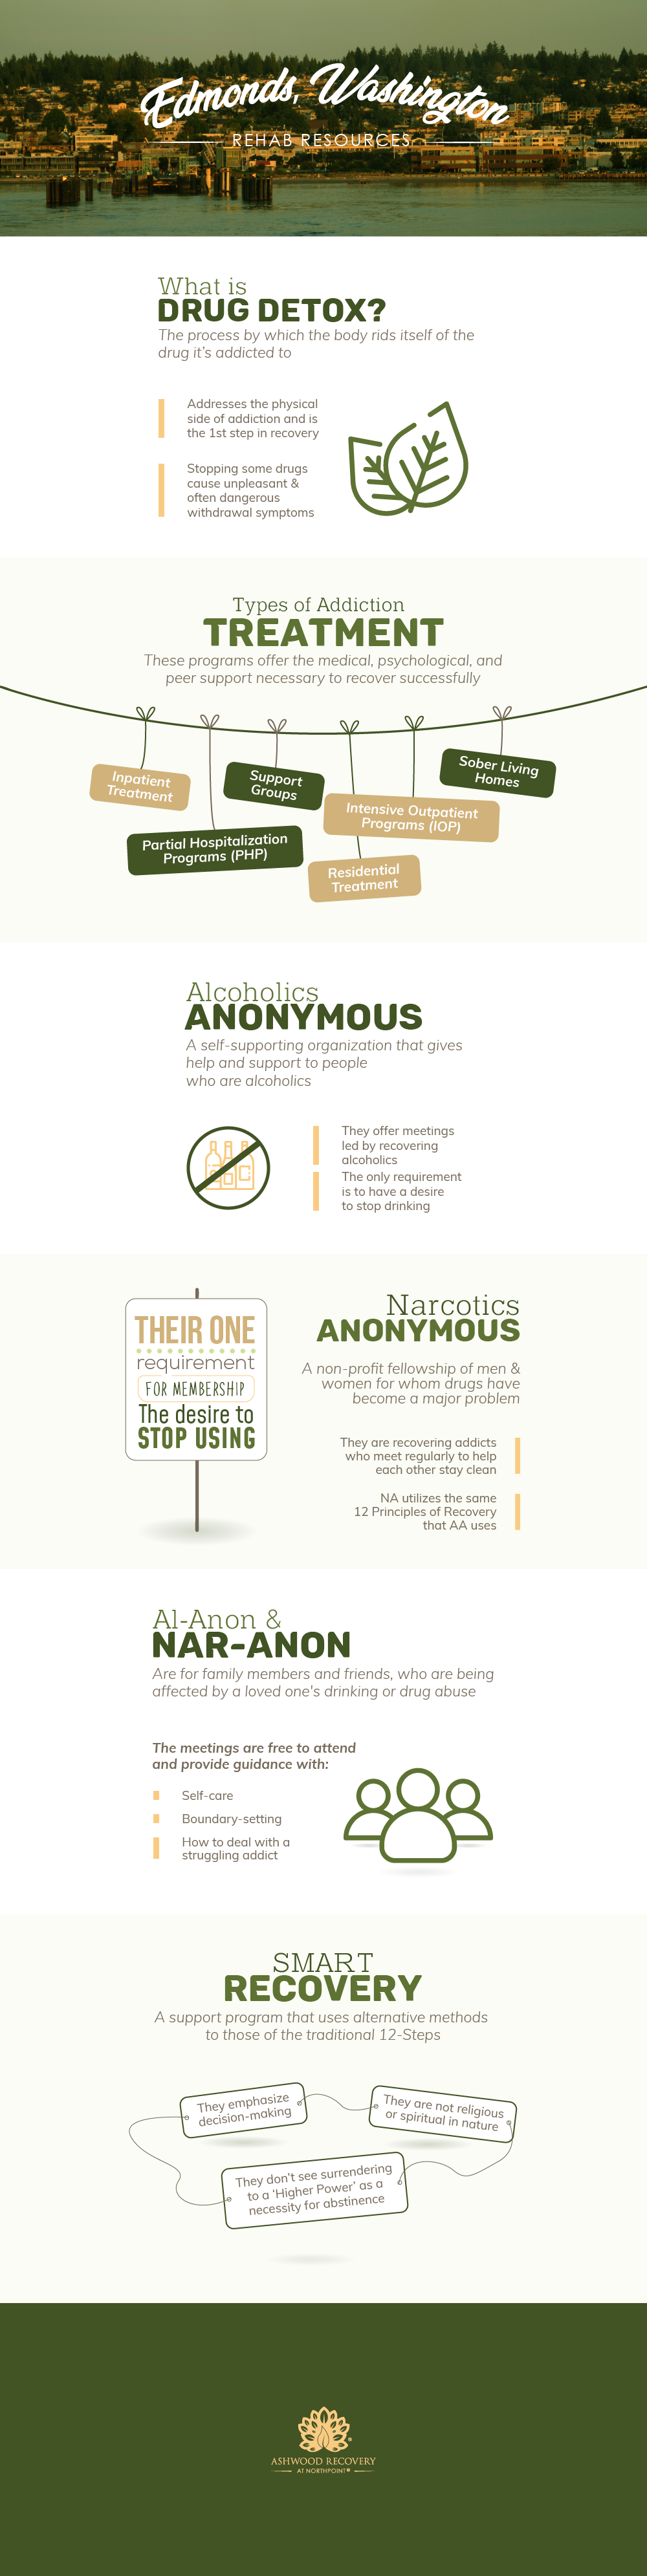 Edmonds, Washington Addiction Resources Full Infographic